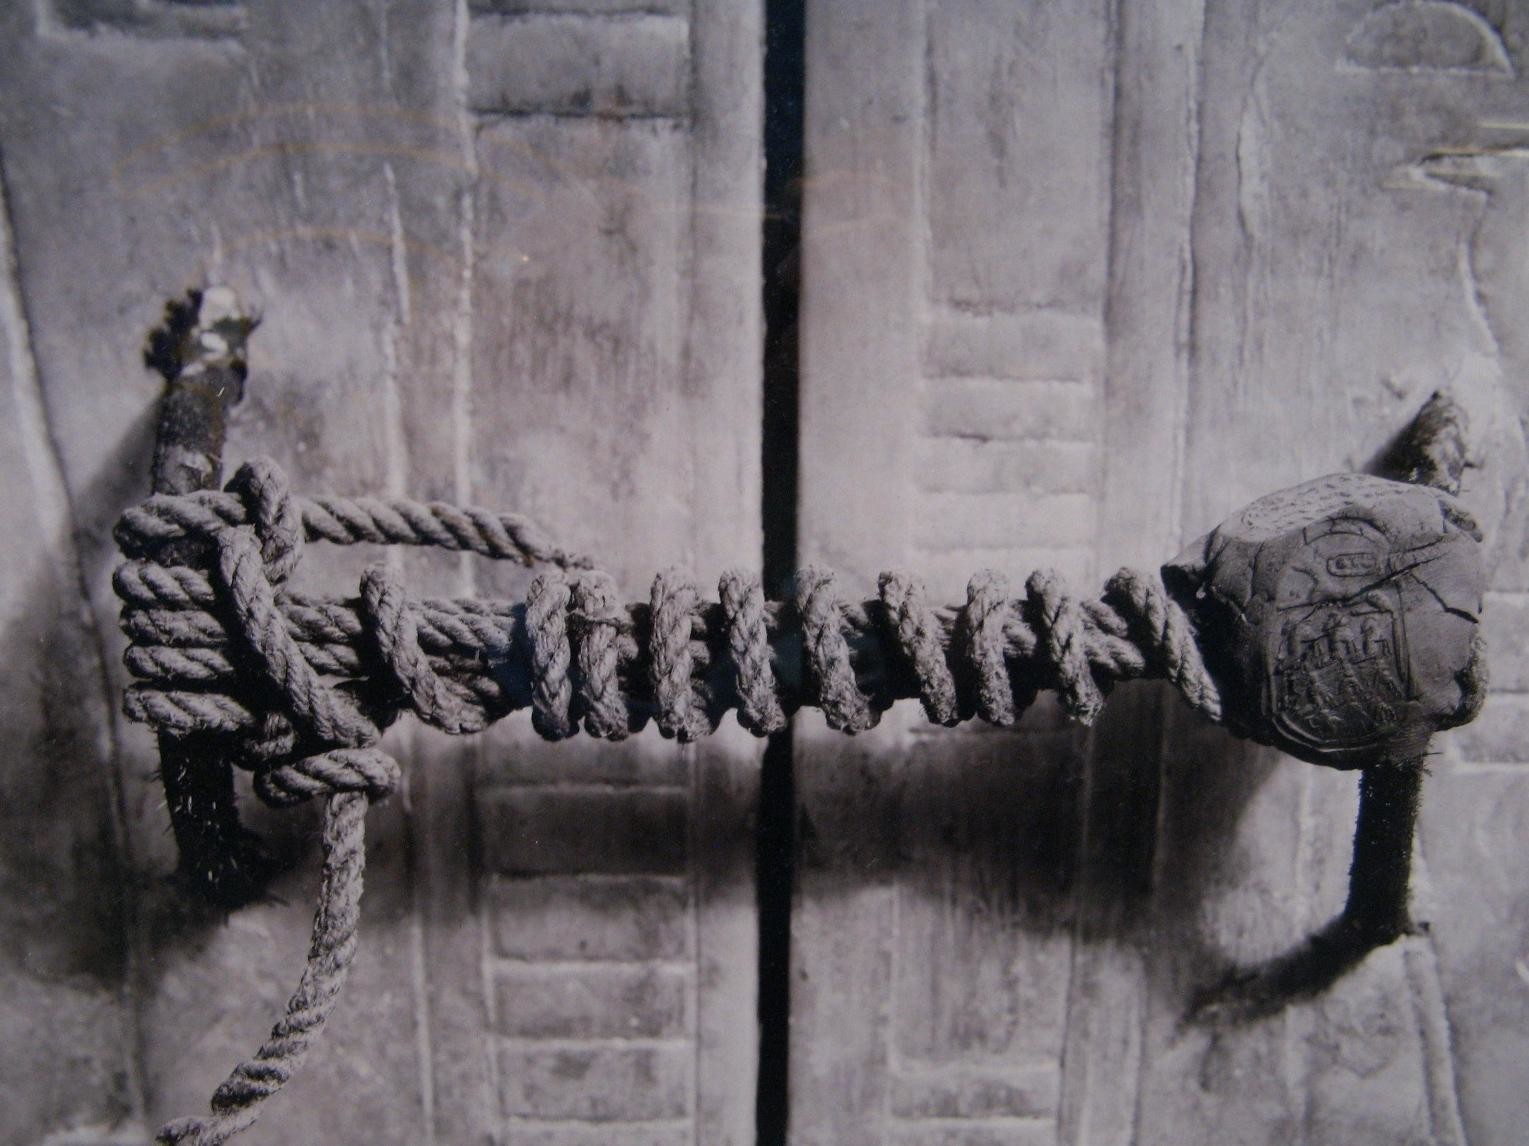 Печать гробницы Тутанхамона до того, как она была обнаружена в 1923 году. Эта целая печать оставалась нетронутой в течение 3245 лет.